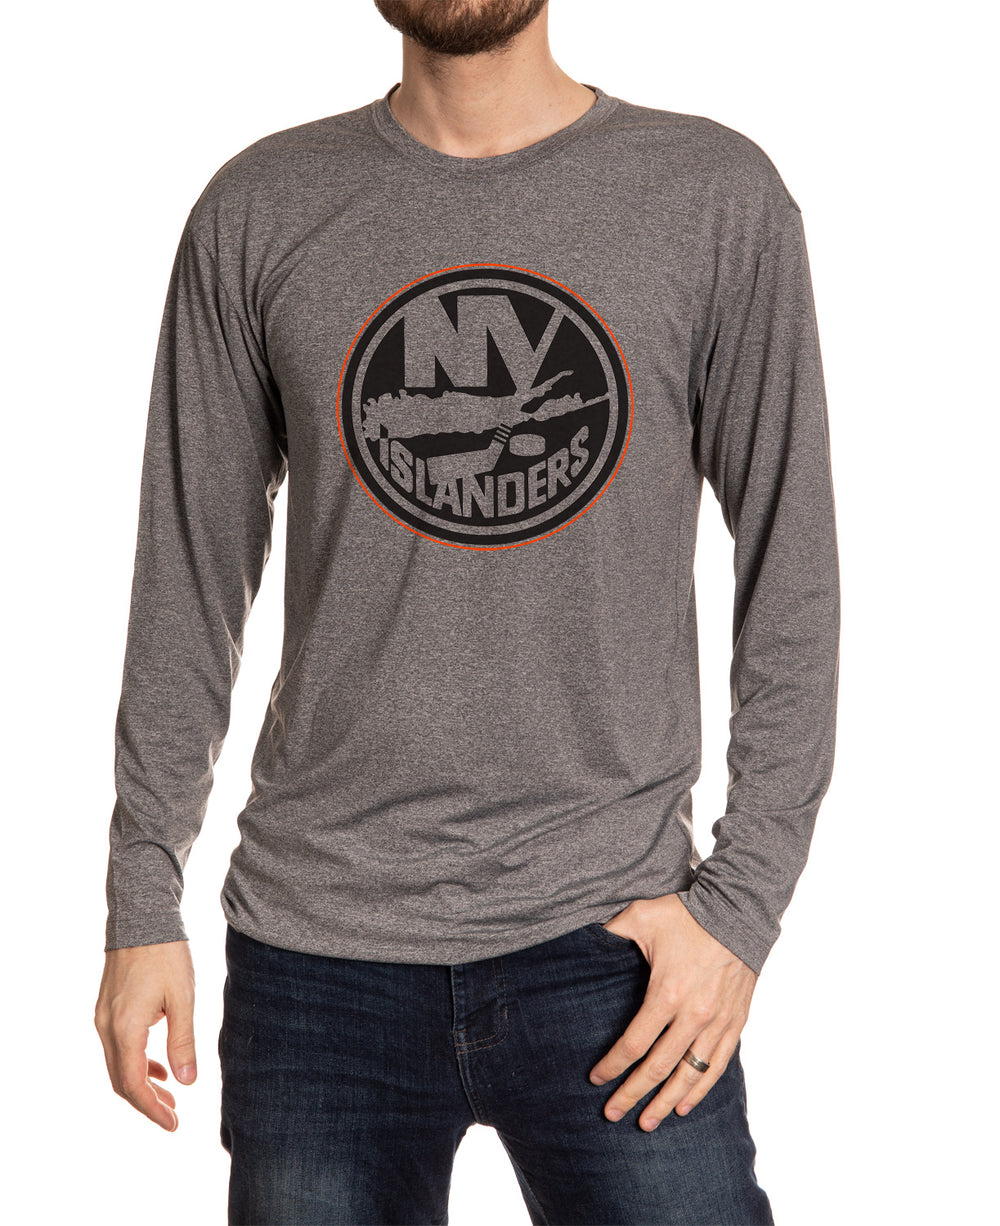 New York Islanders NHL Personalized Dragon Hoodie T Shirt - Growkoc